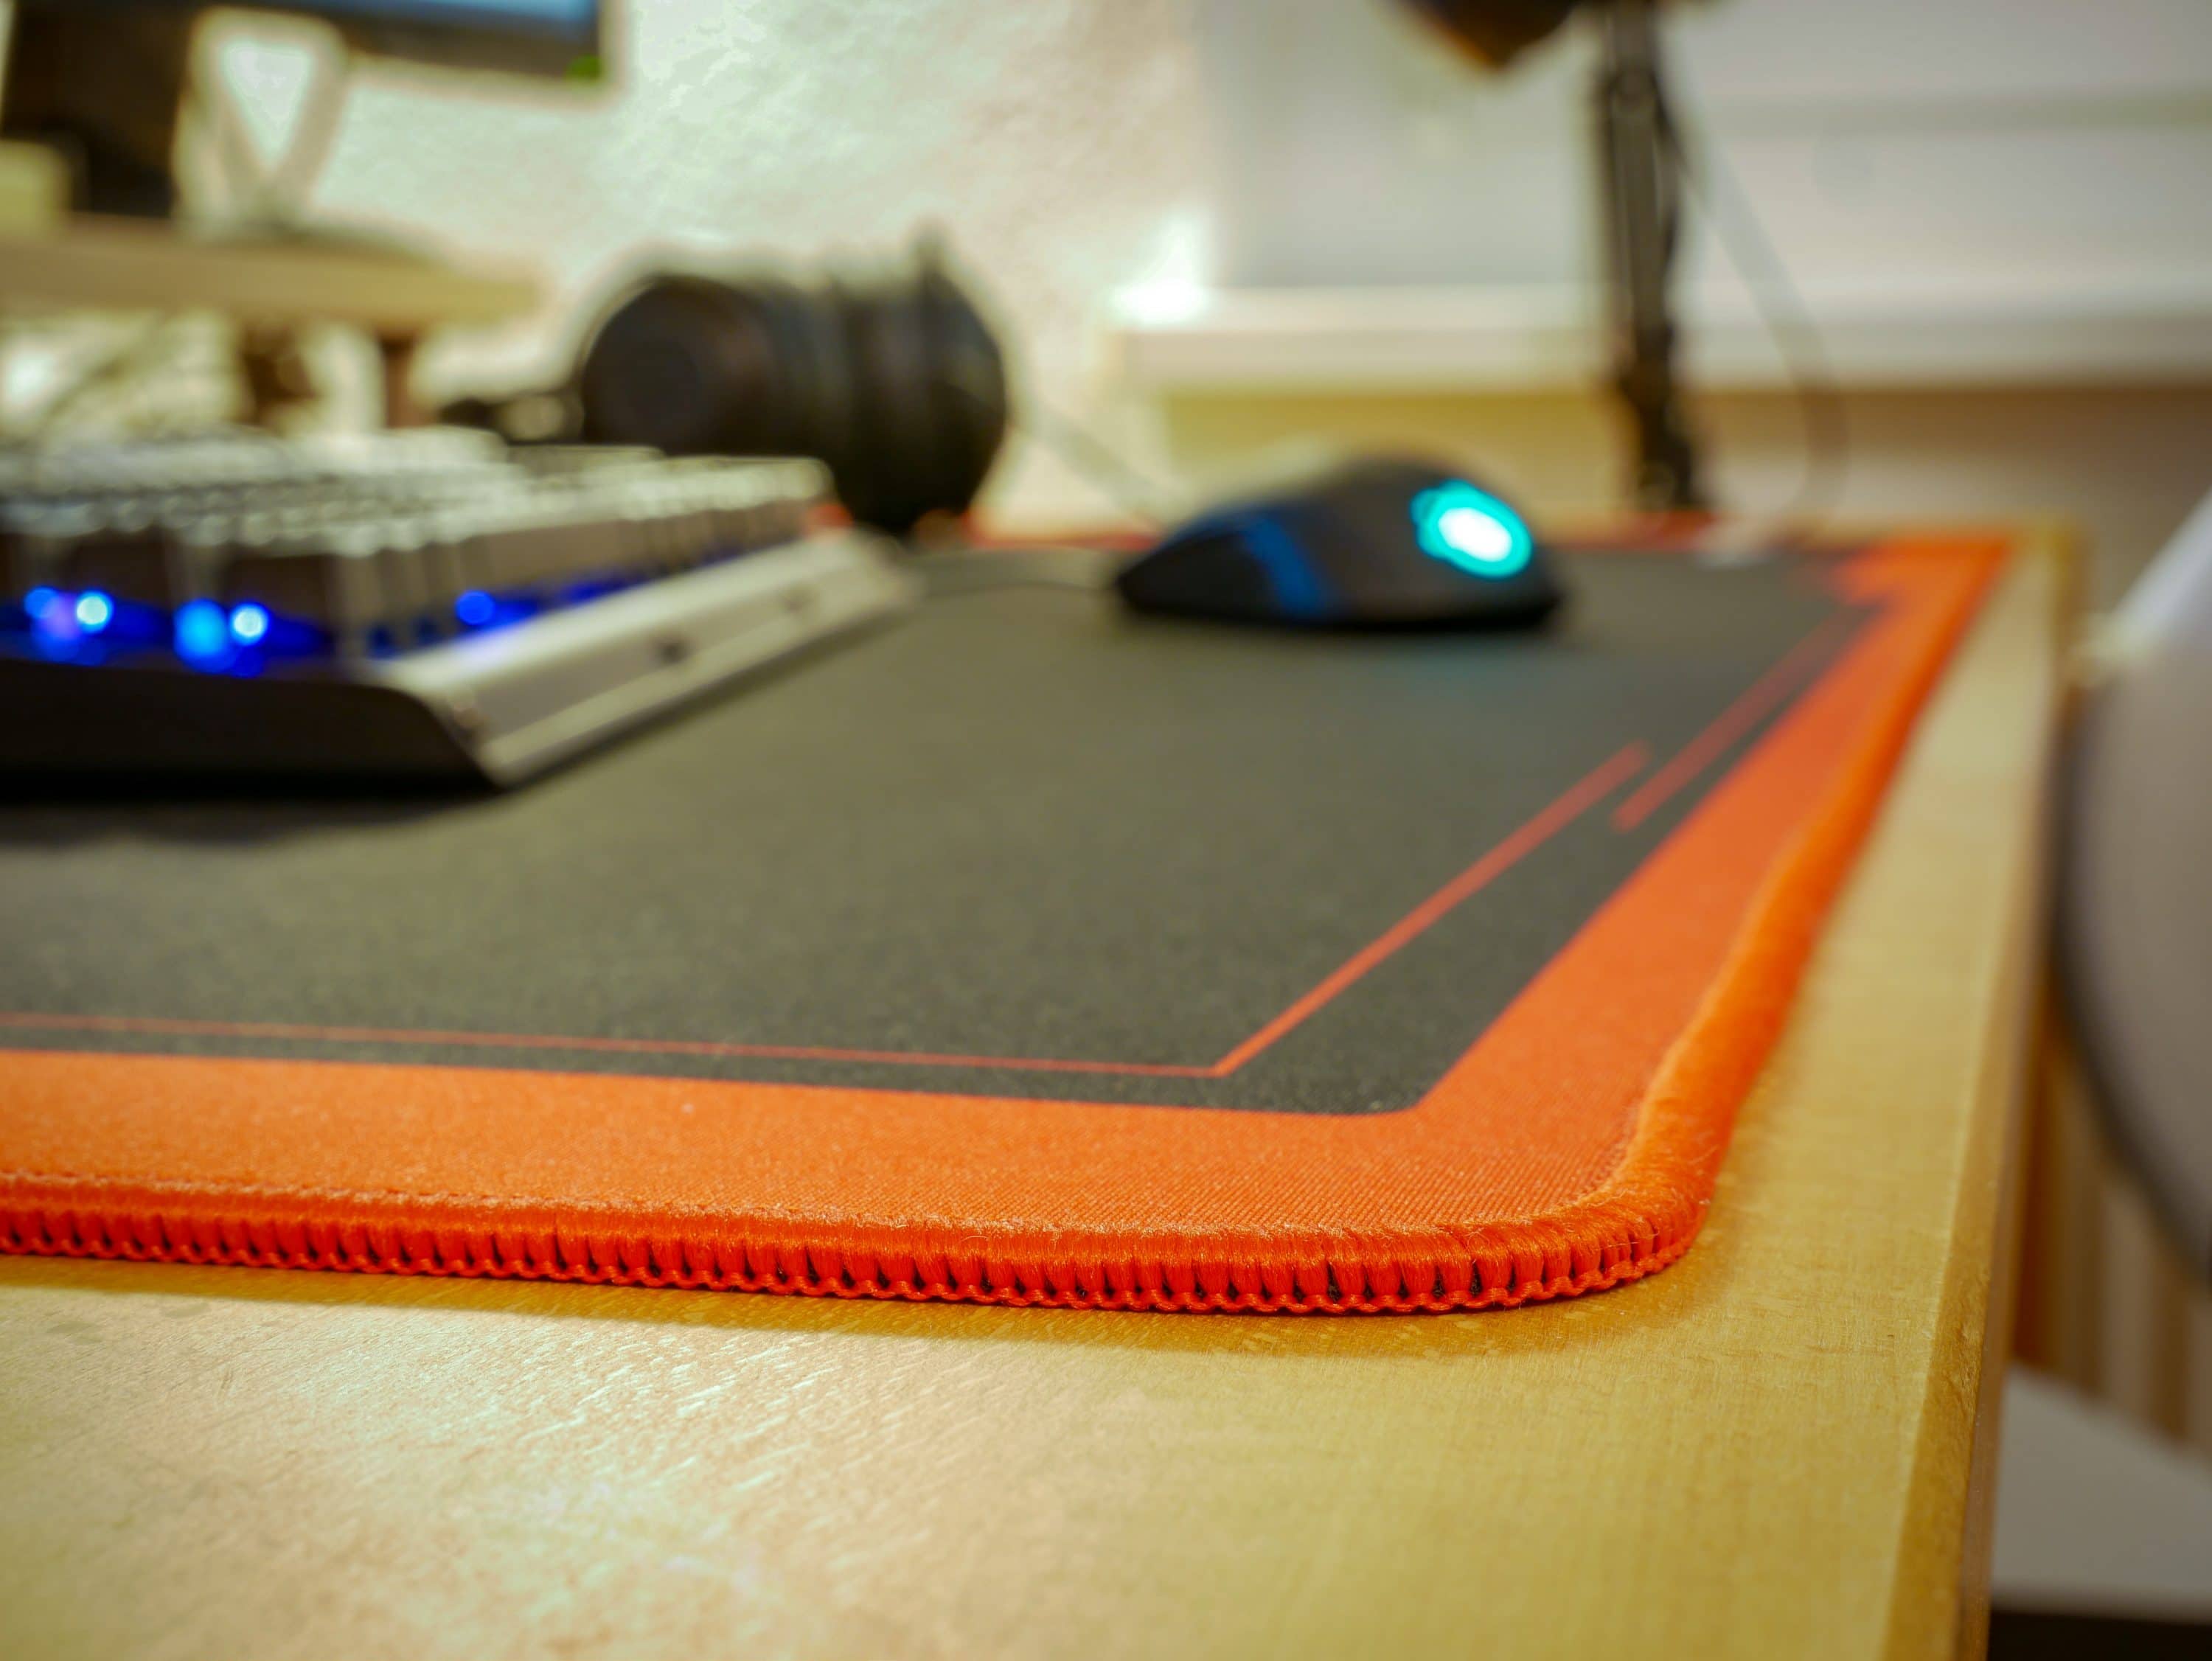 Nero Tappetino per Mouse per scrivania 900x400mm NITRO CONCEPTS DM9 Deskmat Desk Pad Mouse Pad